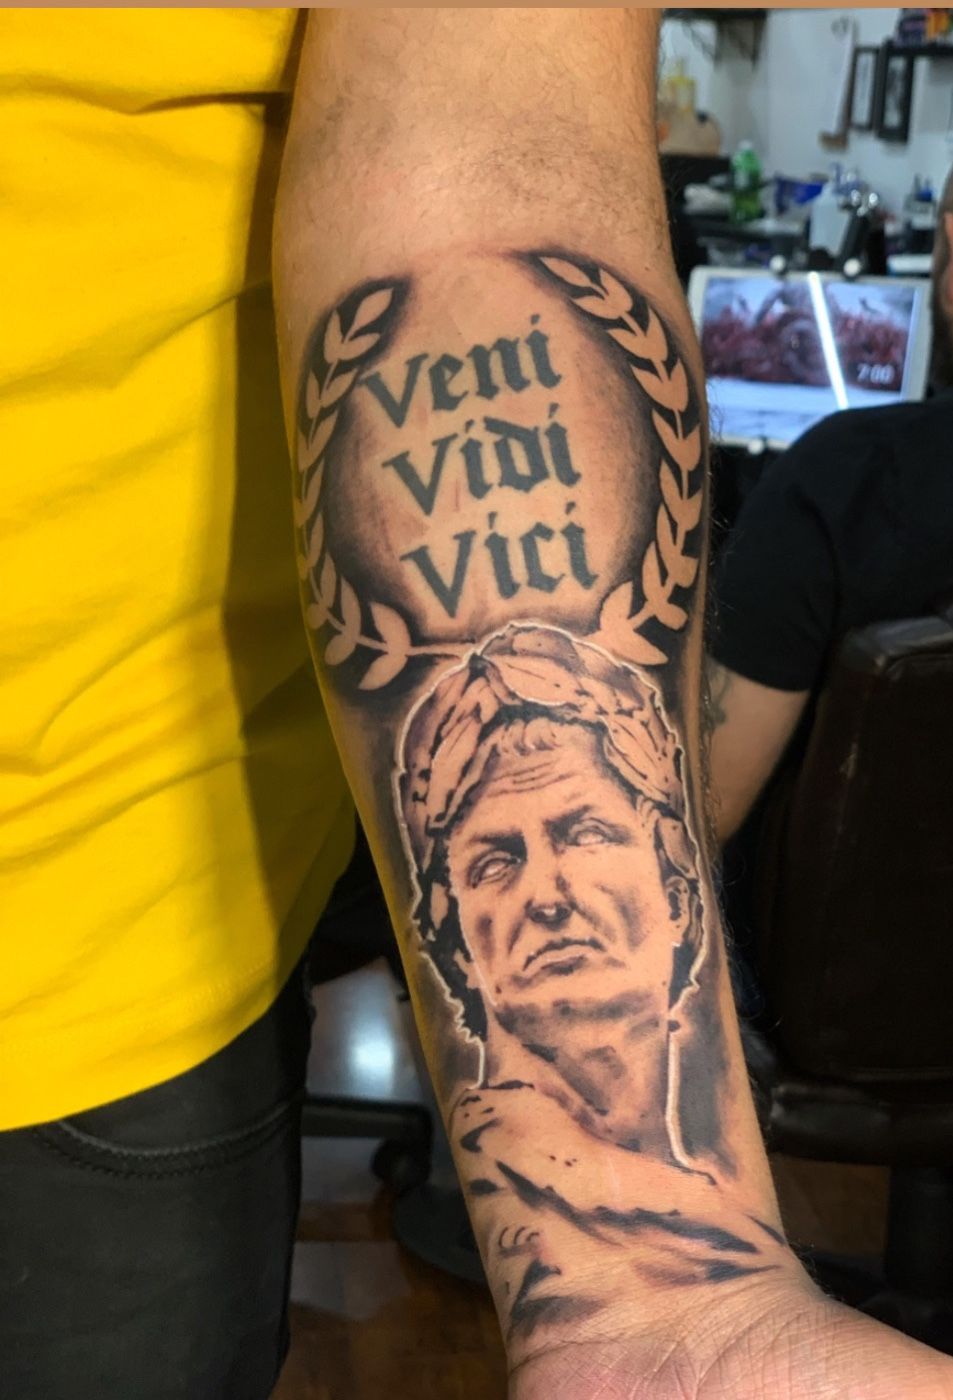 Verry nice black and grey realistic tattoo style of Julius Caesar motive  done by artist Mark Wosgerau  Post 18288  World T  Greek tattoos Roman  tattoo Tattoos